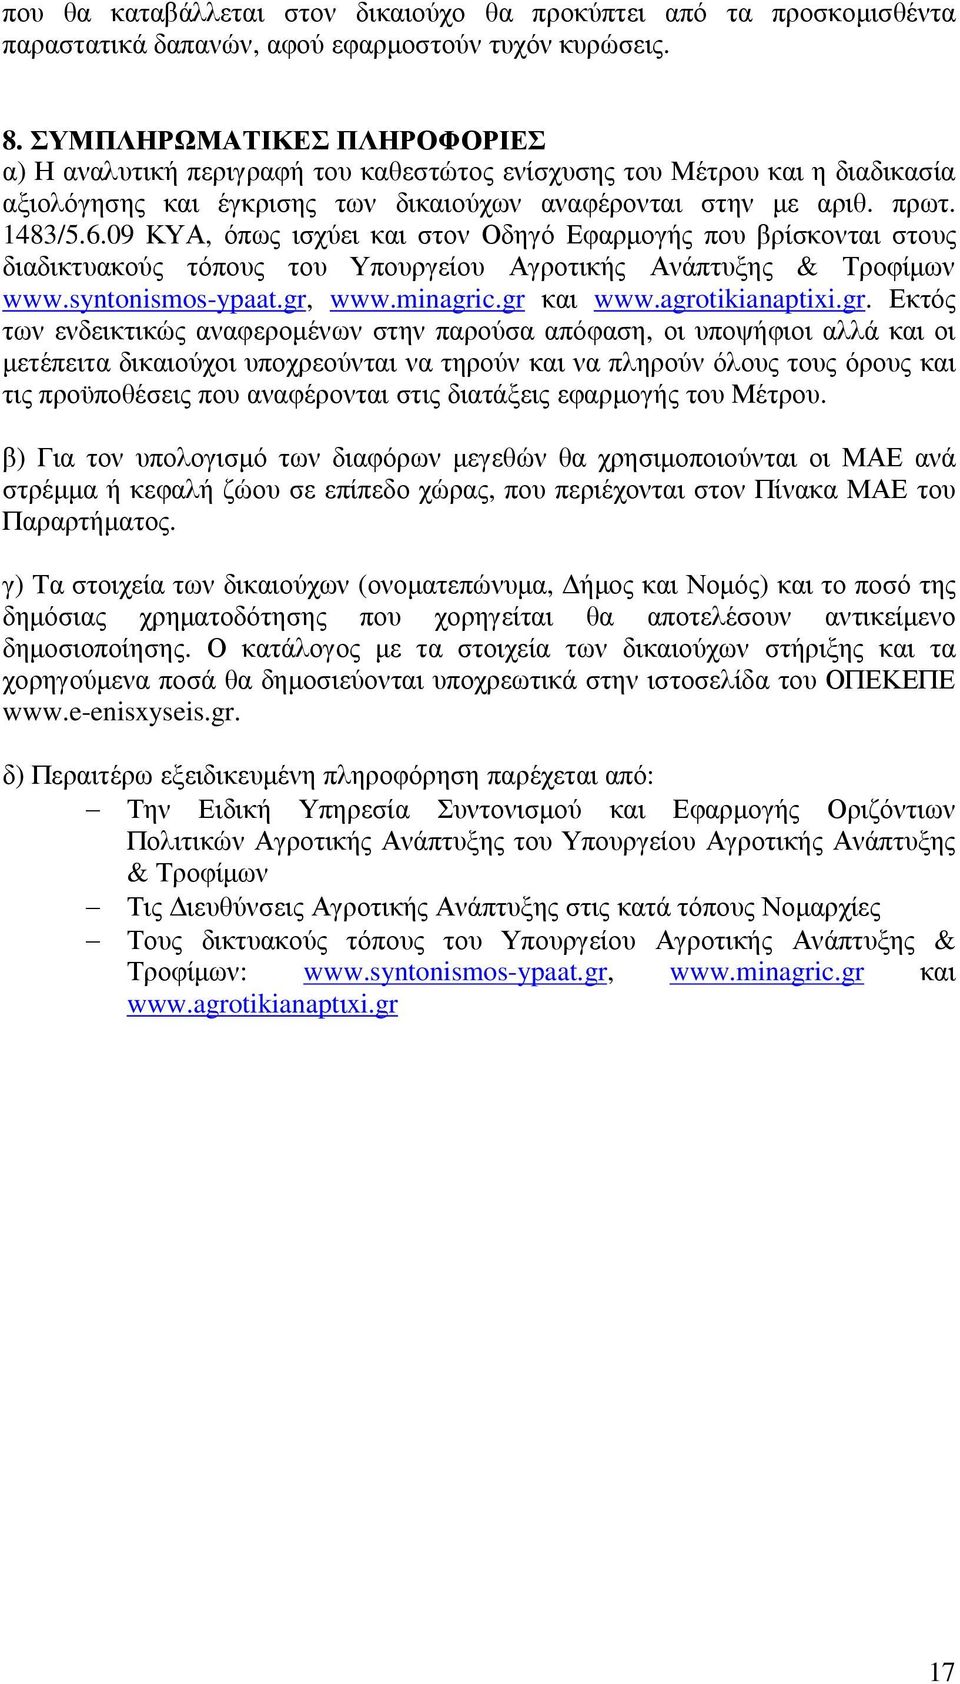 09 ΚΥΑ, όπως ισχύει και στον Οδηγό Εφαρµογής που βρίσκονται στους διαδικτυακούς τόπους του Υπουργείου Αγροτικής Ανάπτυξης & Τροφίµων www.syntonismos-ypaat.gr, www.minagric.gr και www.agrotikianaptixi.